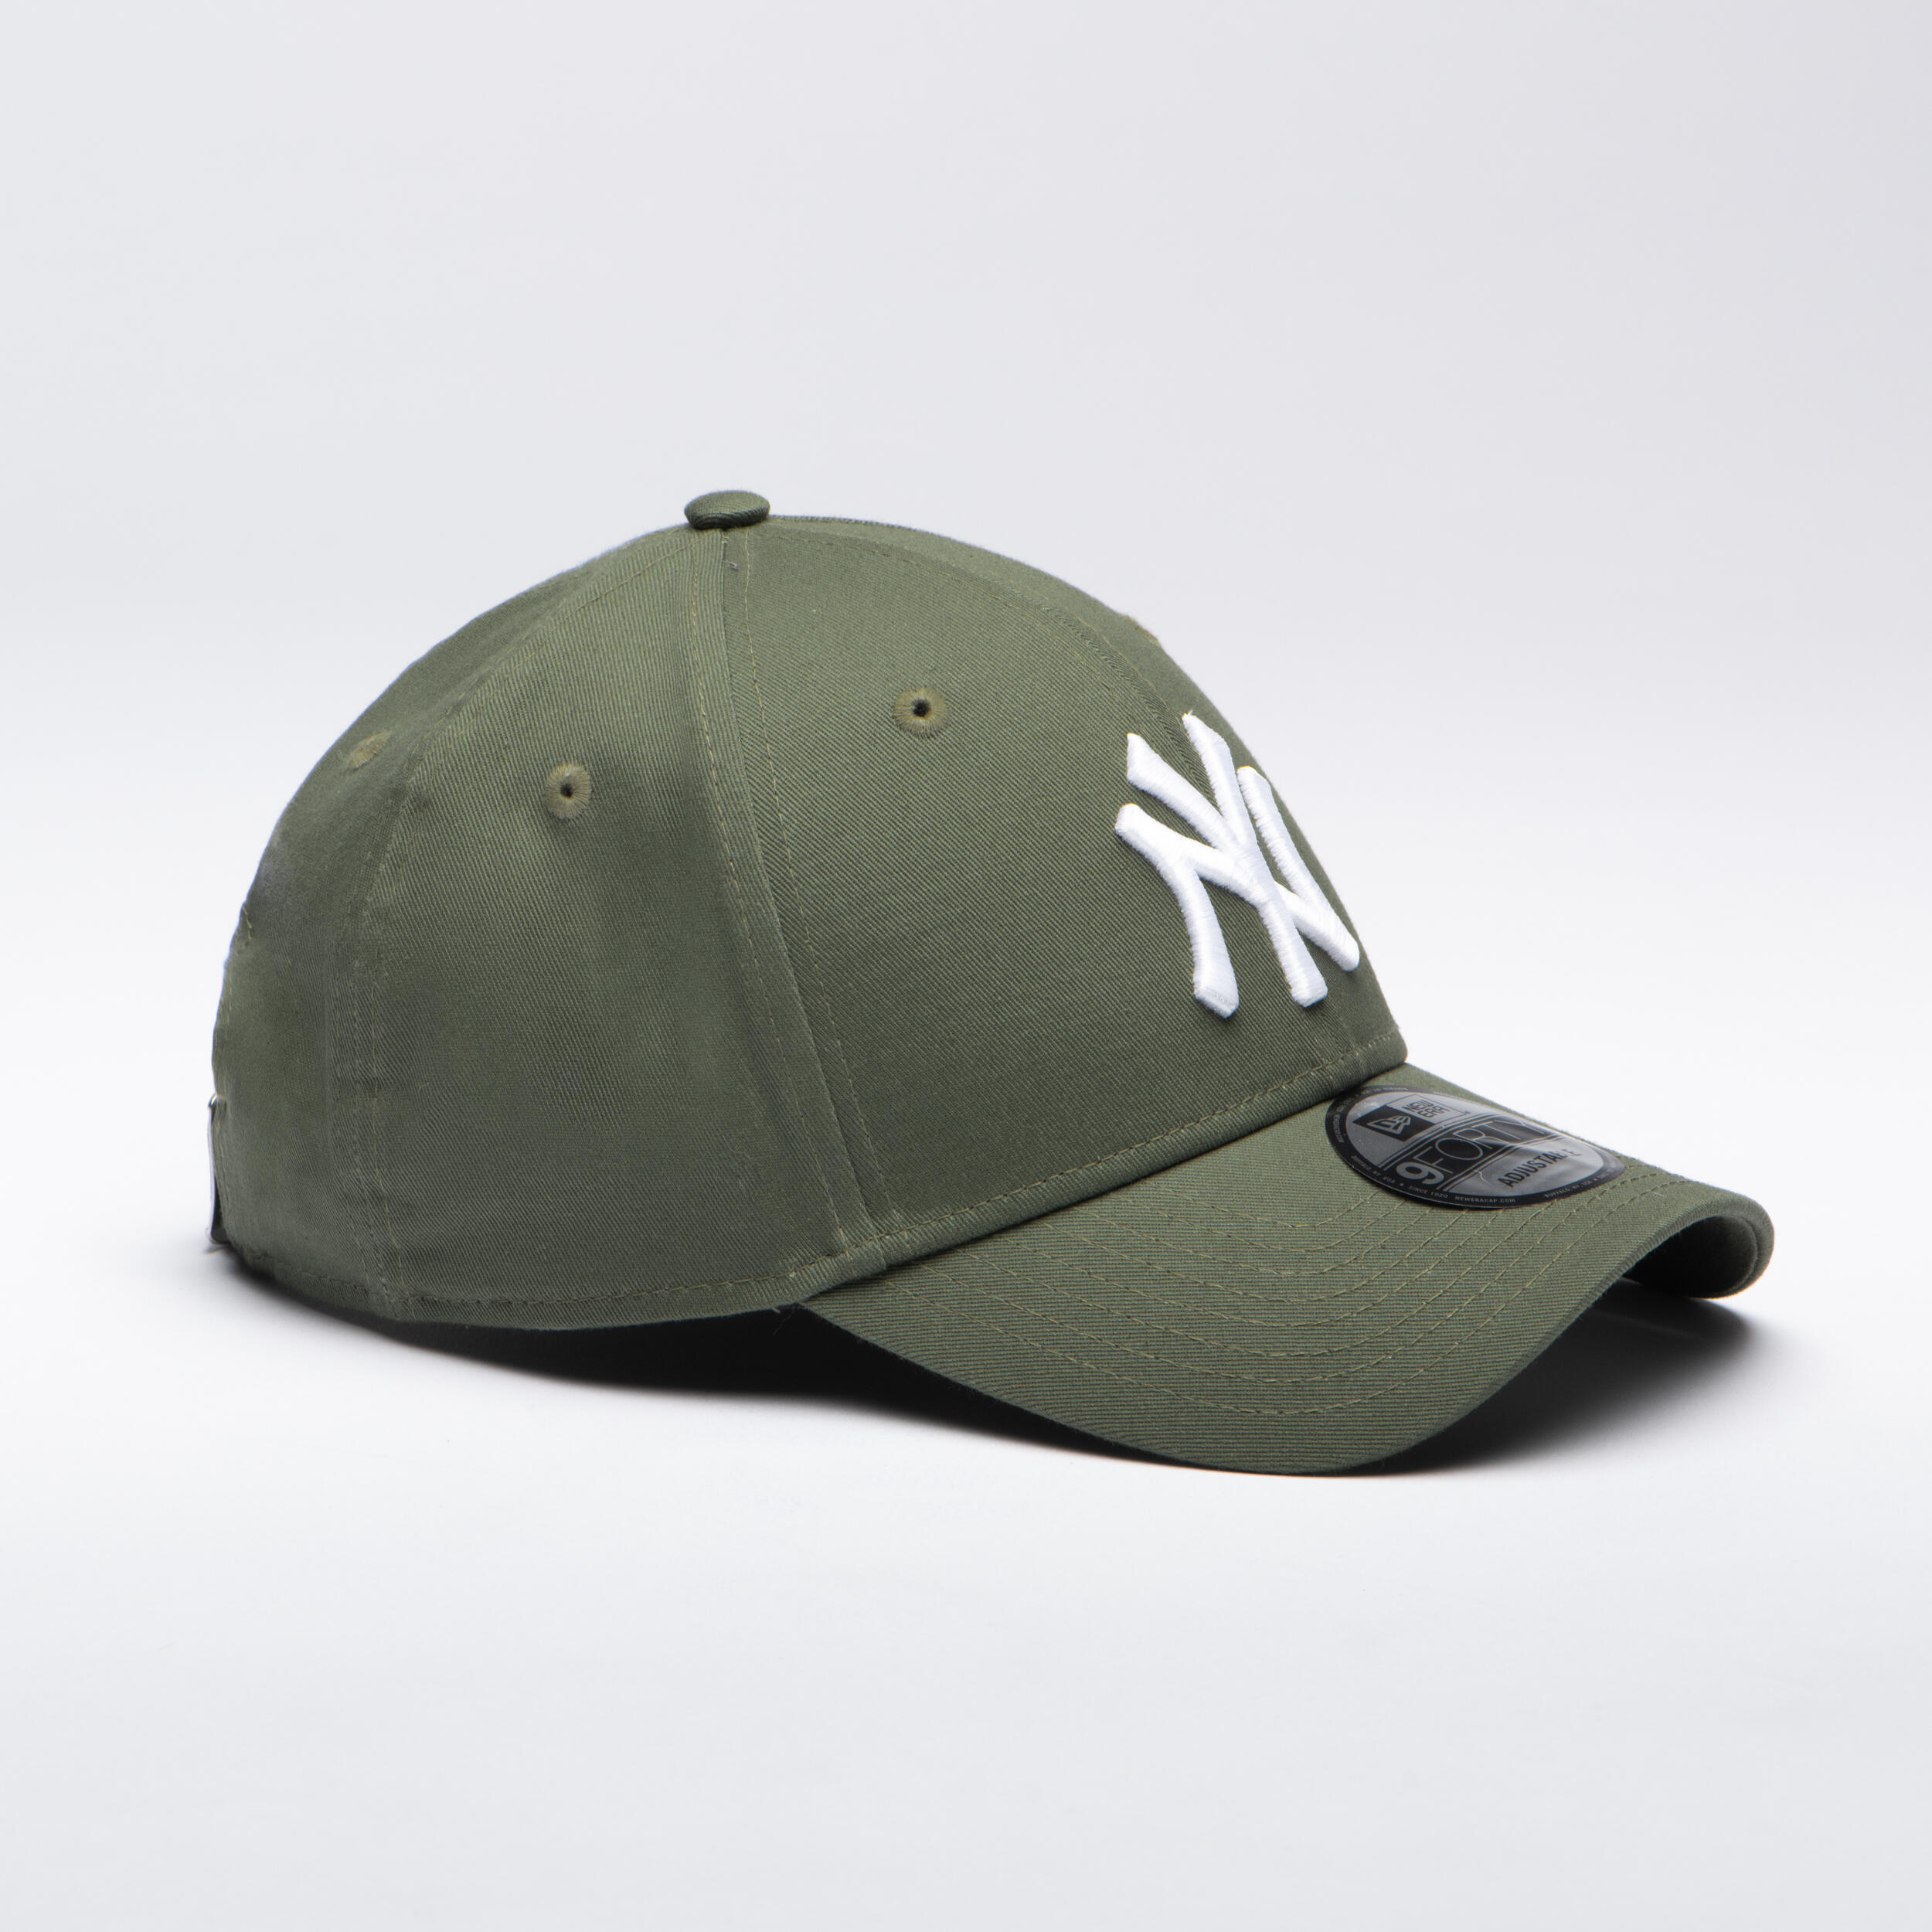 Men's / Women's MLB Baseball Cap New York Yankees - Green 4/7